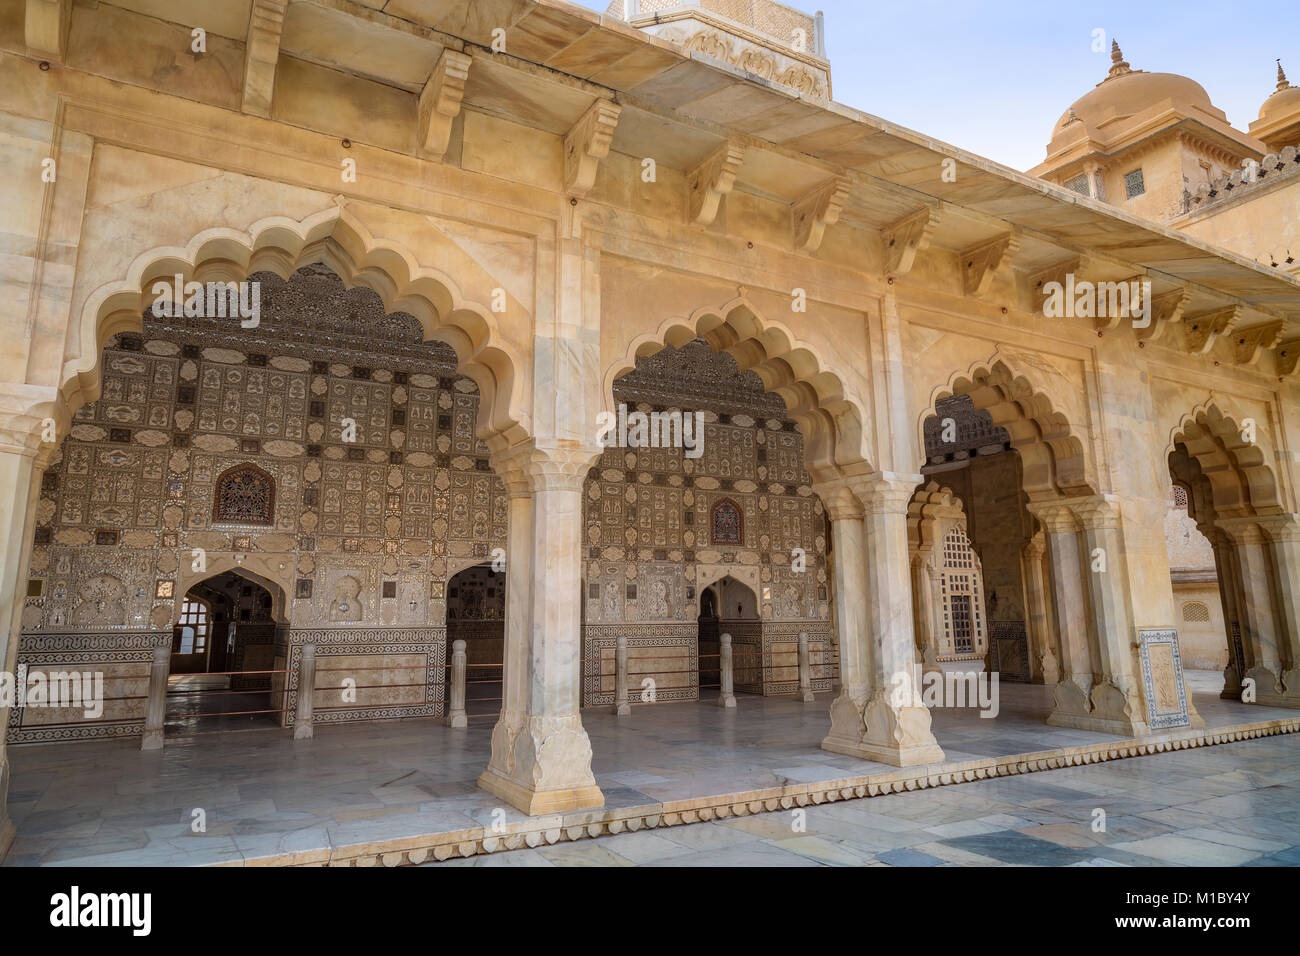 Amber Fort Jaipur Rajasthan - Vista di architettura struttura costruita con marmo bianco. Forte Amer è un sito Patrimonio Mondiale dell'UNESCO. Foto Stock